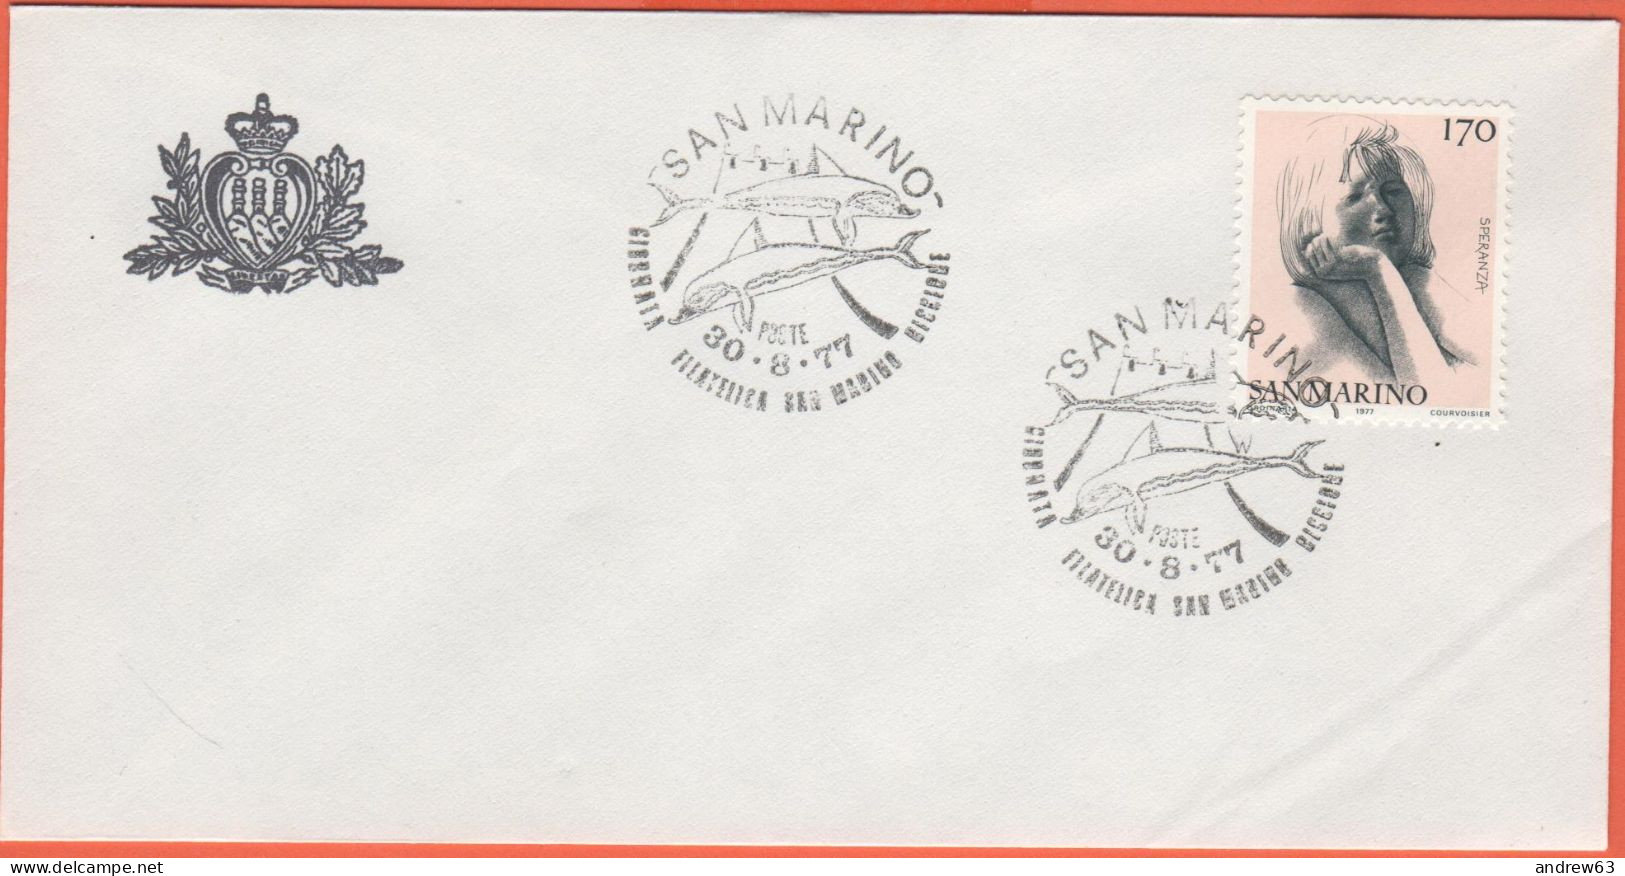 SAN MARINO - 1977 - 170 Le Virtù Civili-Speranza + Annullo Giornata Filatelica San Marino-Riccione Del 30/08/77 - Uffici - Lettres & Documents